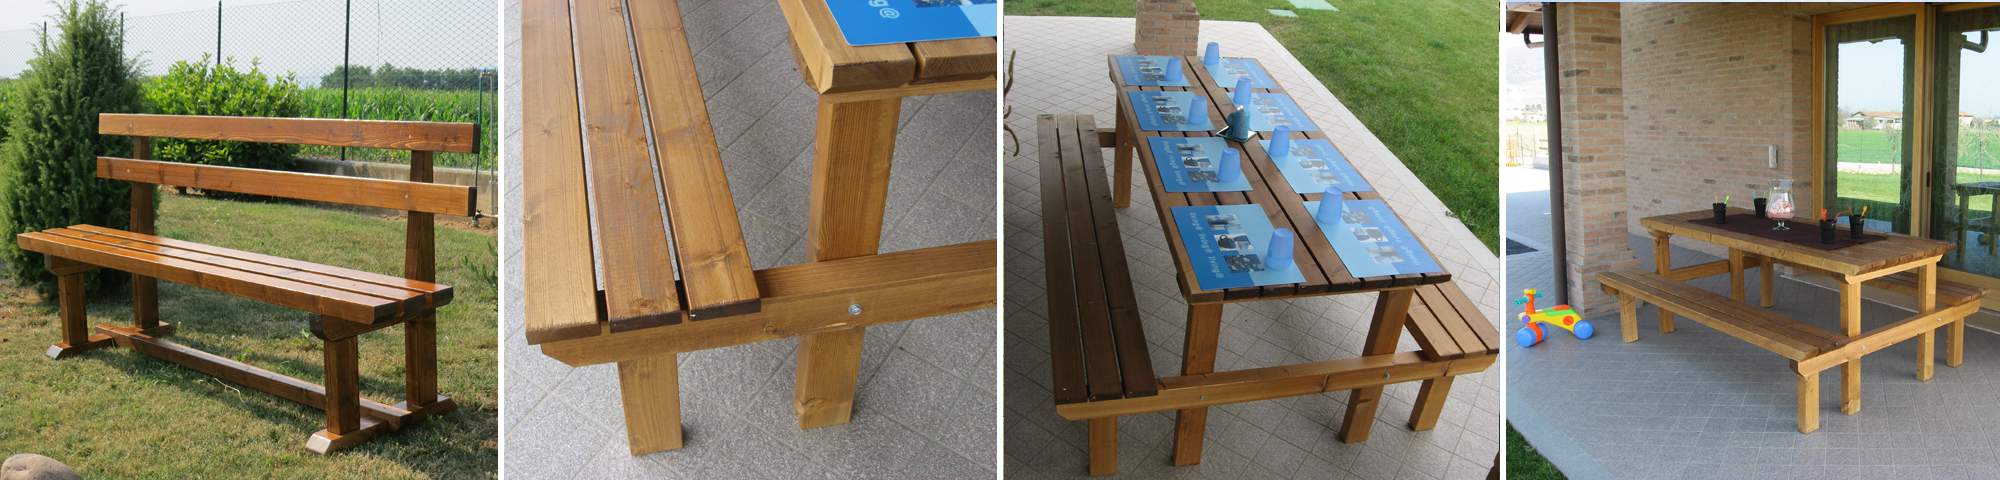 I nostri mobili da giardino in legno: panche e tavoli